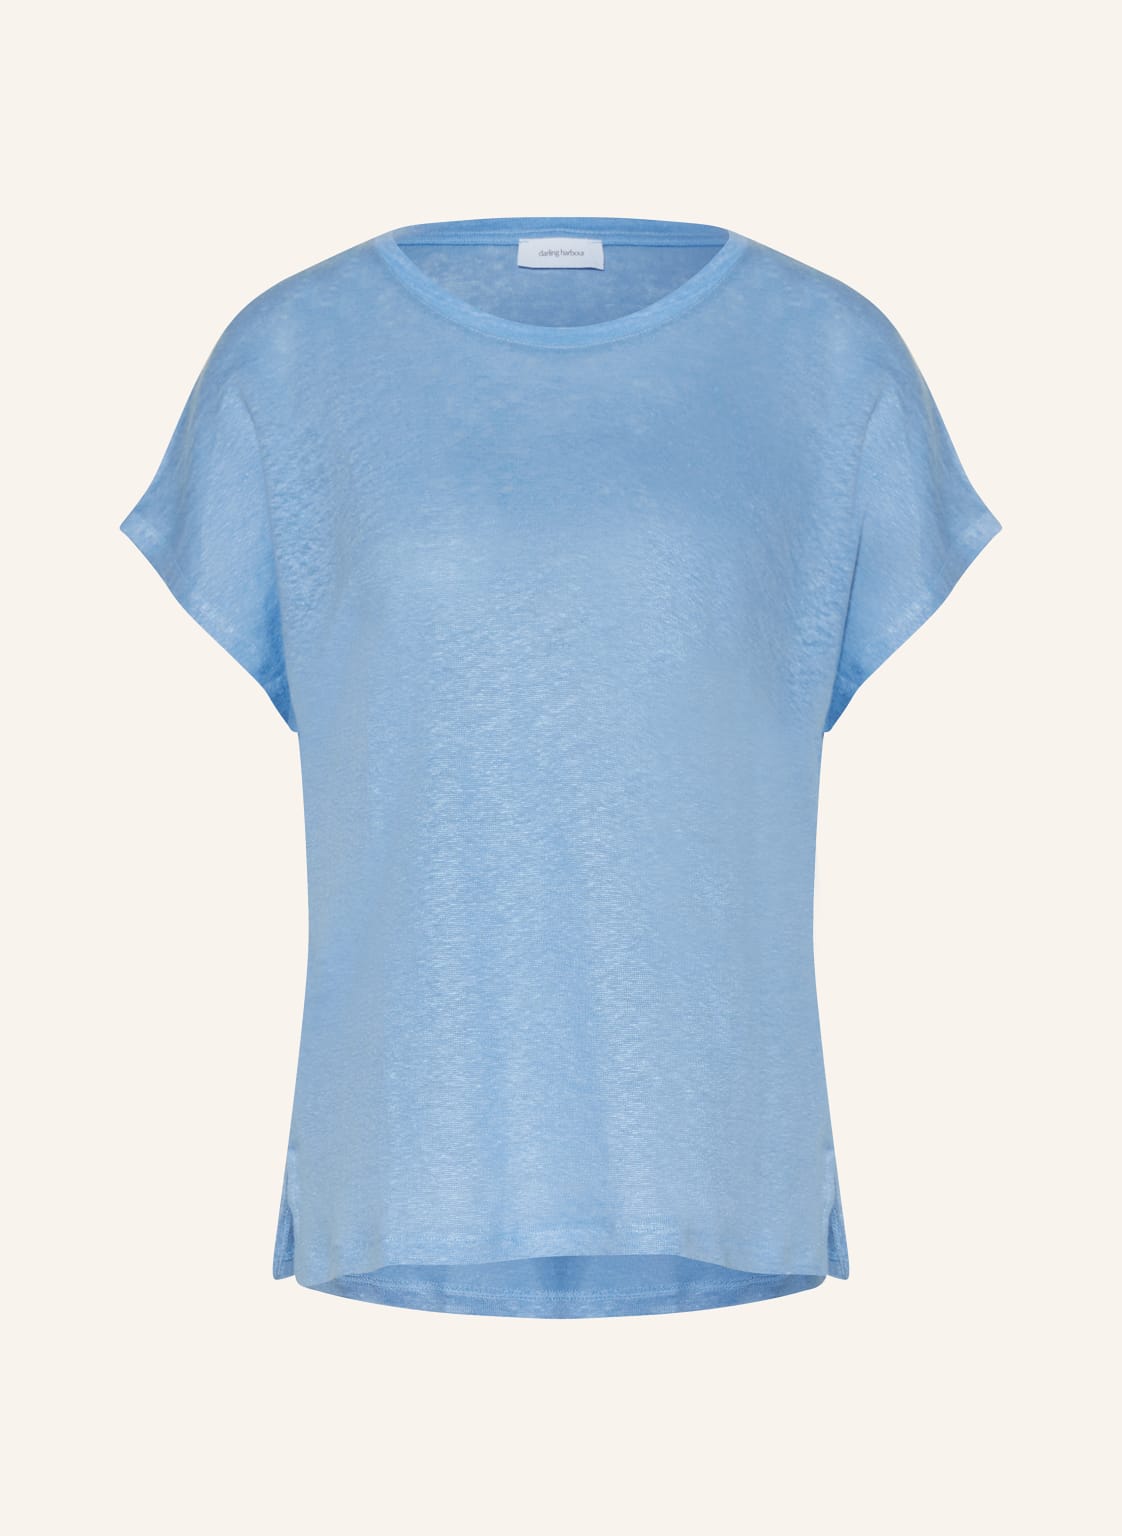 Darling Harbour T-Shirt Aus Leinen blau von darling harbour